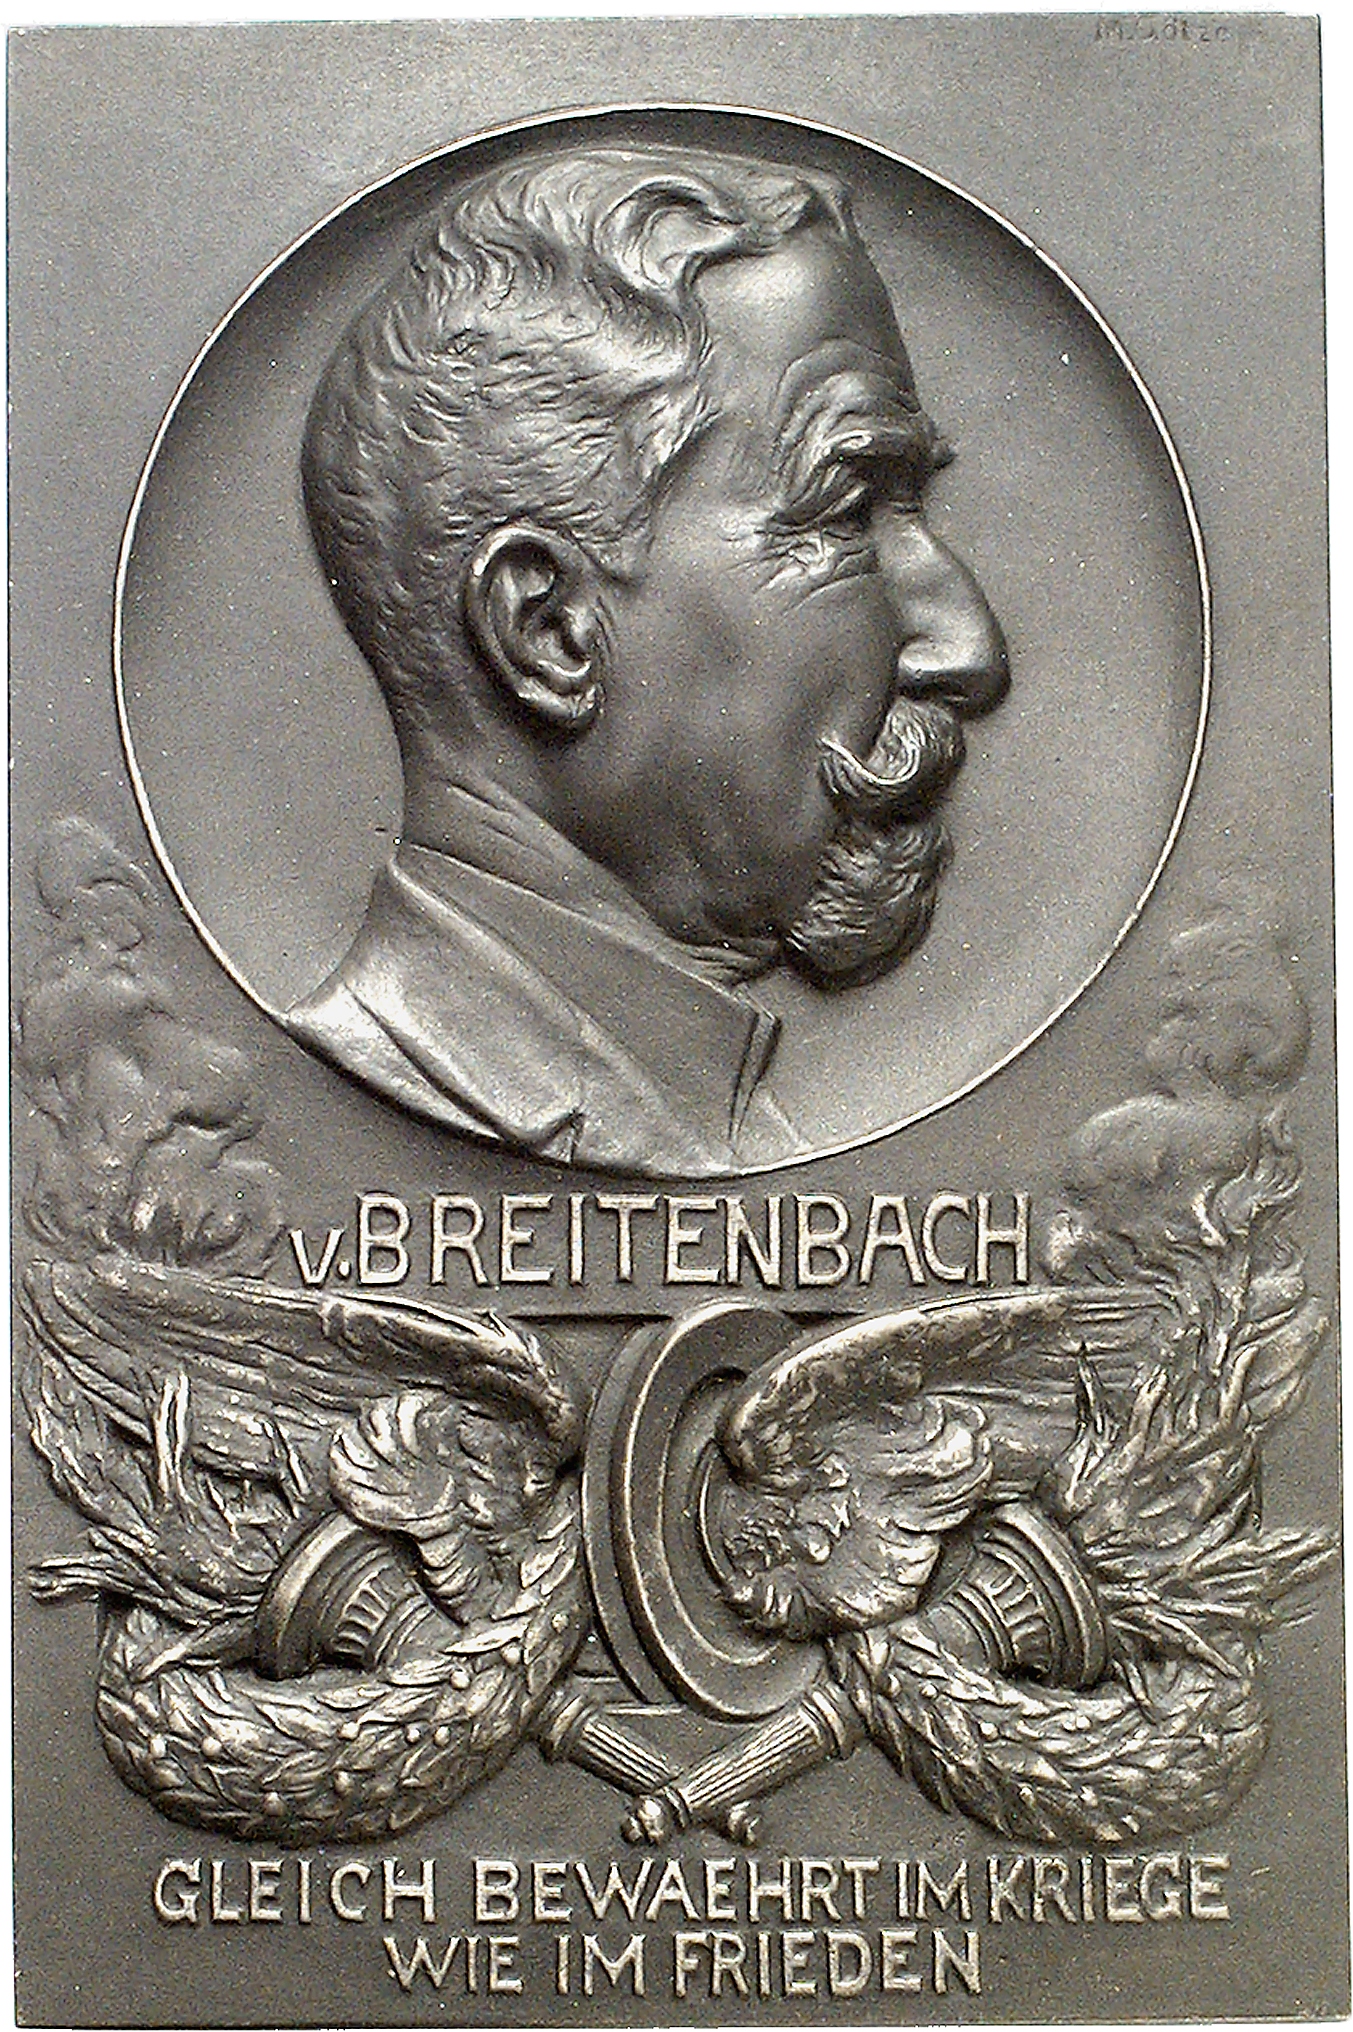 Götze, Martin: Paul von Breitenbach